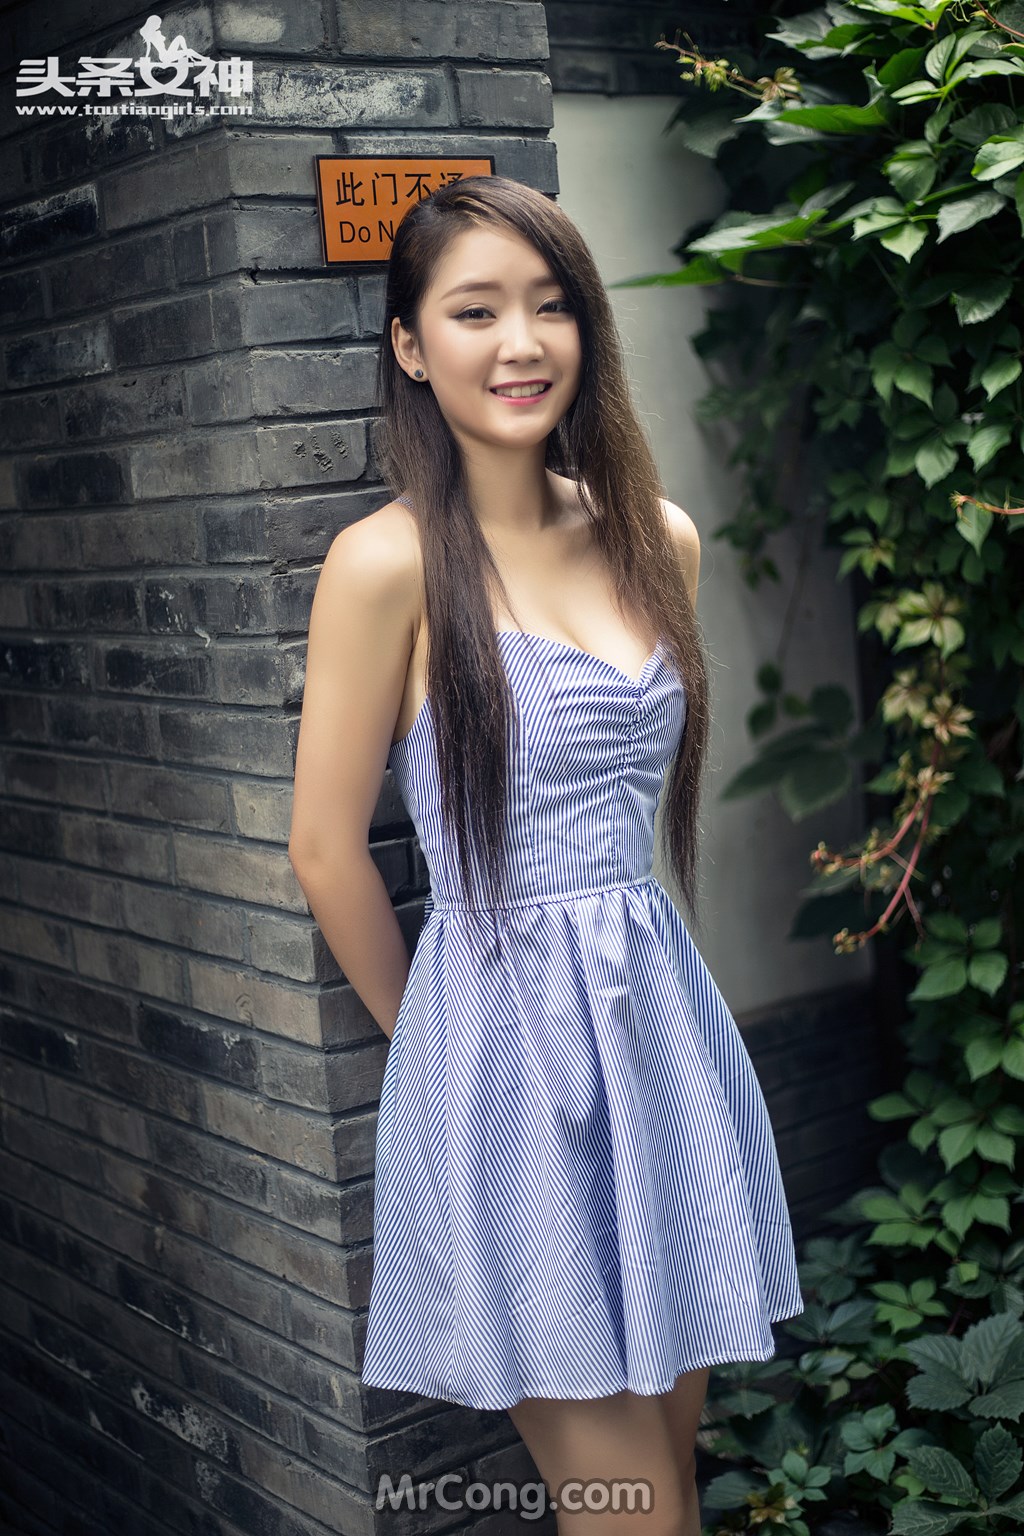 TouTiao 2016-08-10: Model Xiao Ya (小雅) (26 photos) photo 1-13